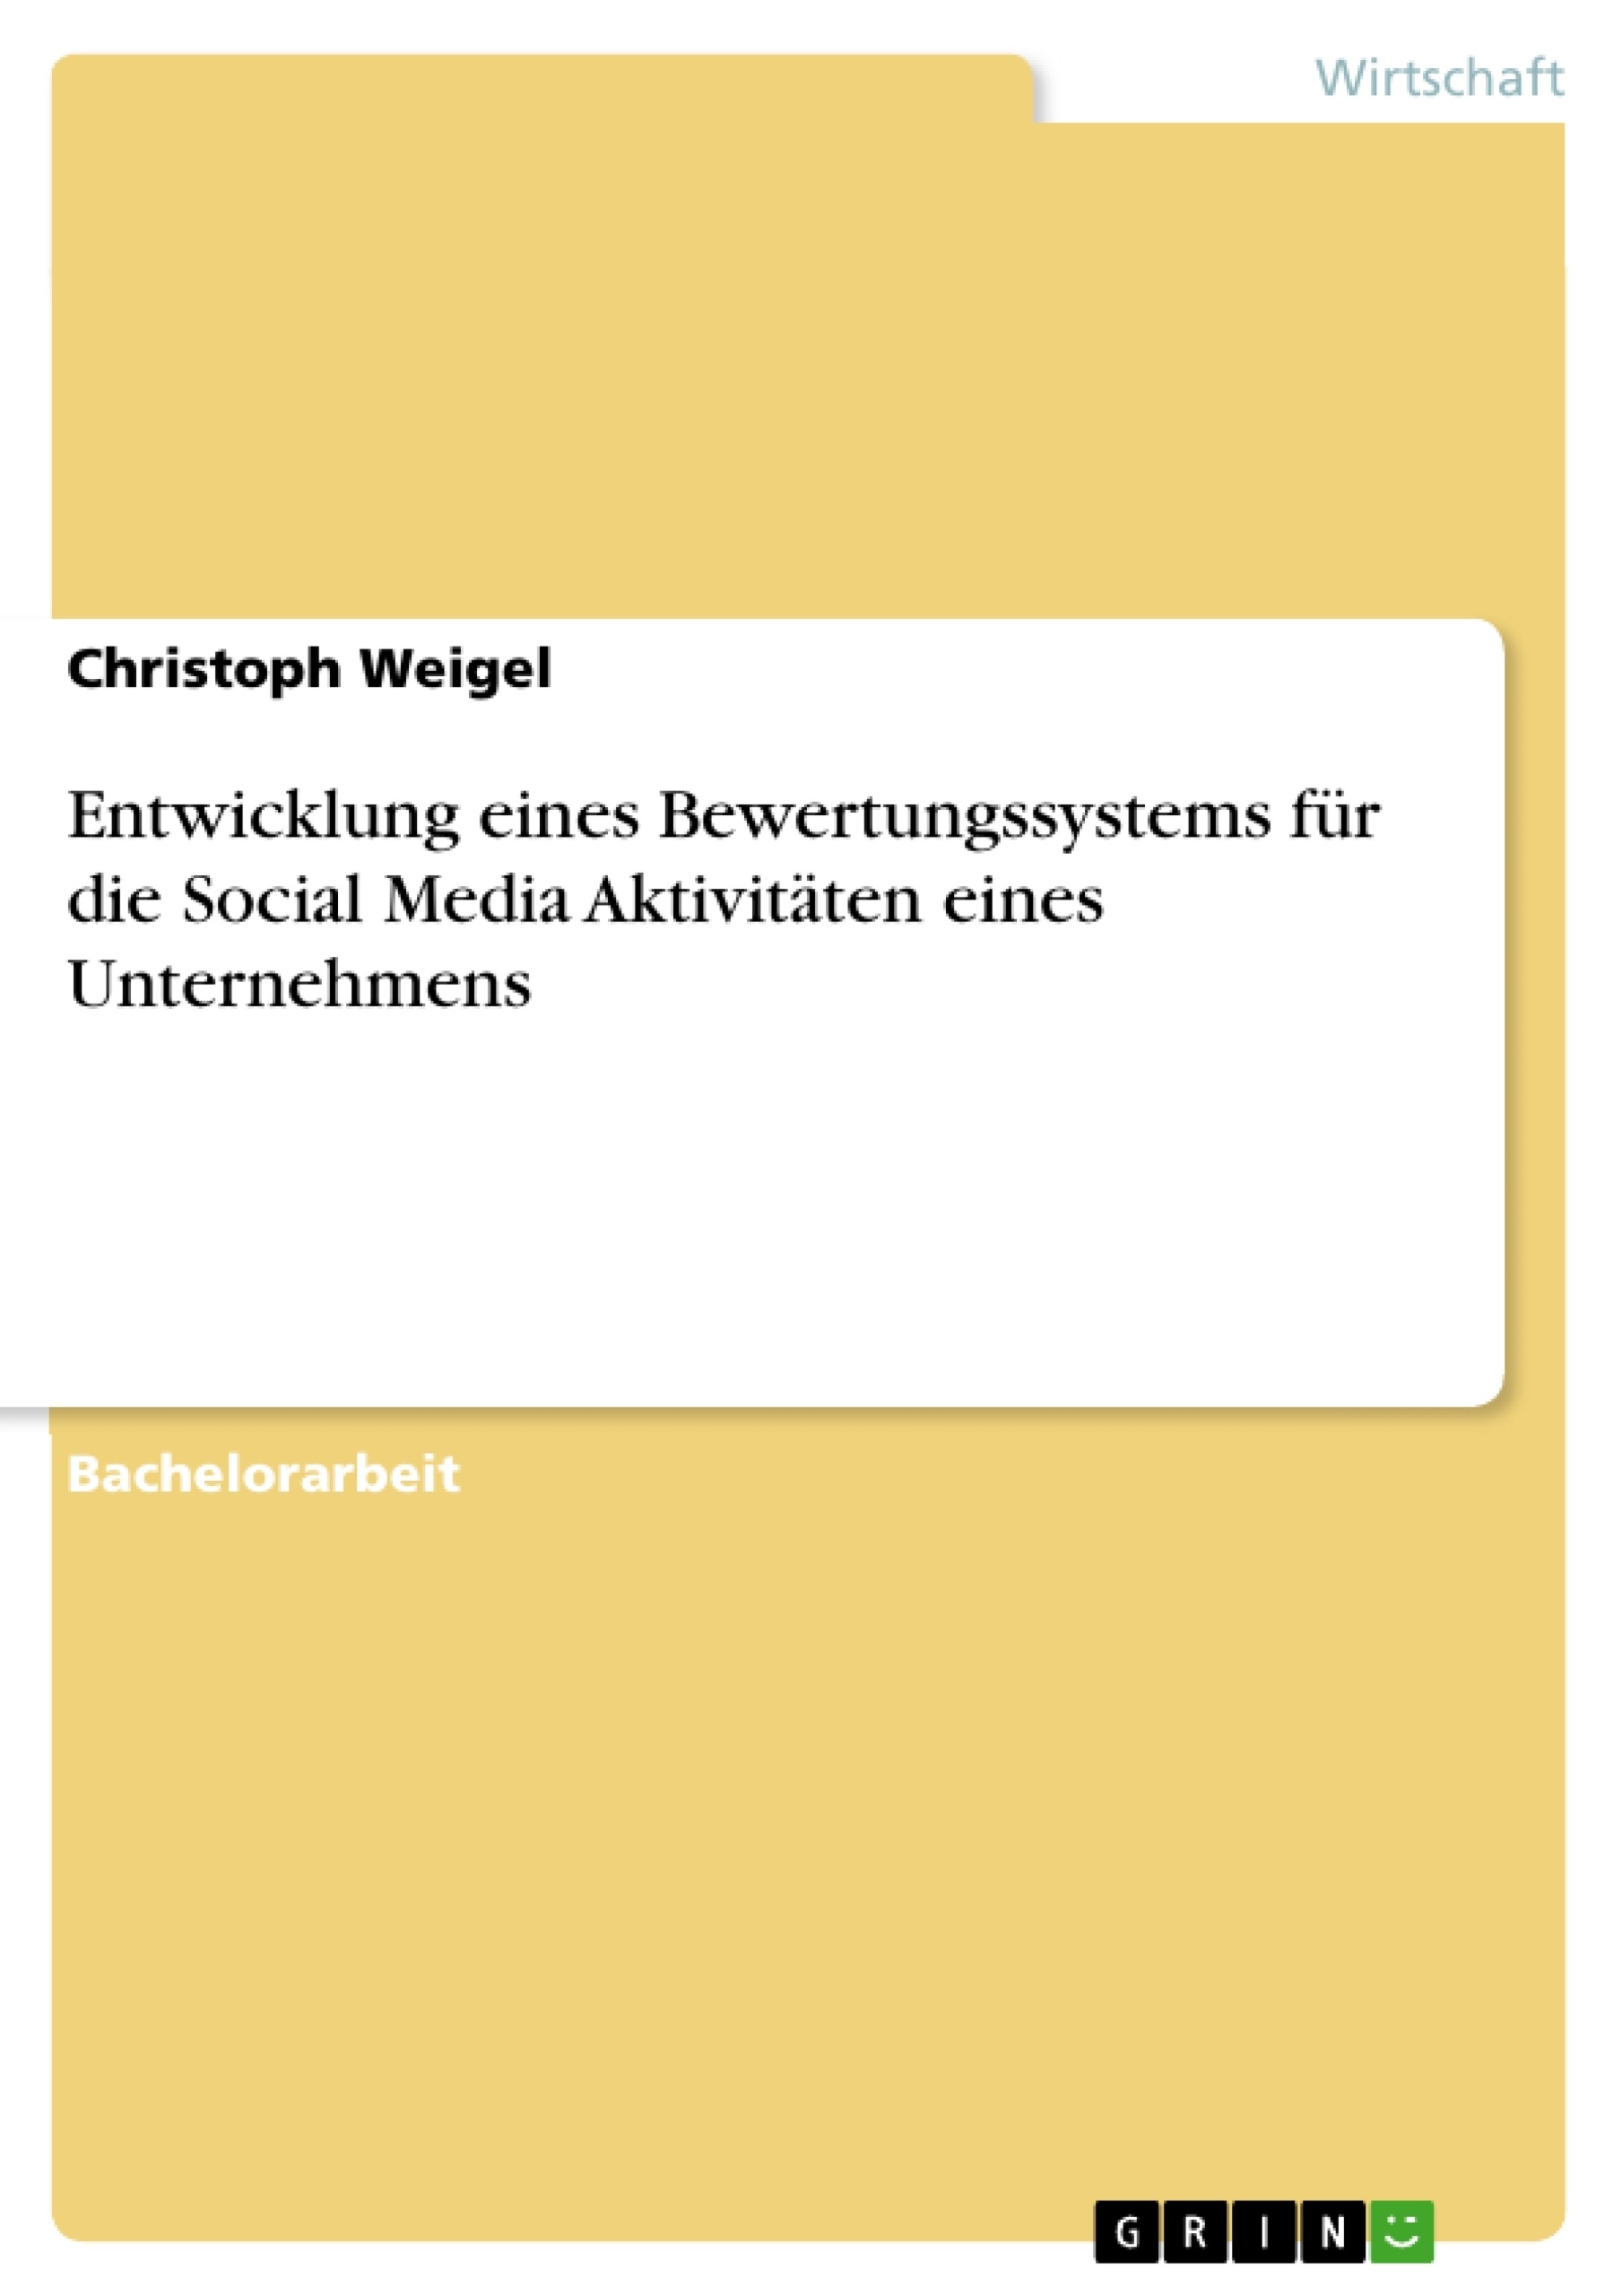 Título: Entwicklung eines Bewertungssystems für die Social Media Aktivitäten eines Unternehmens